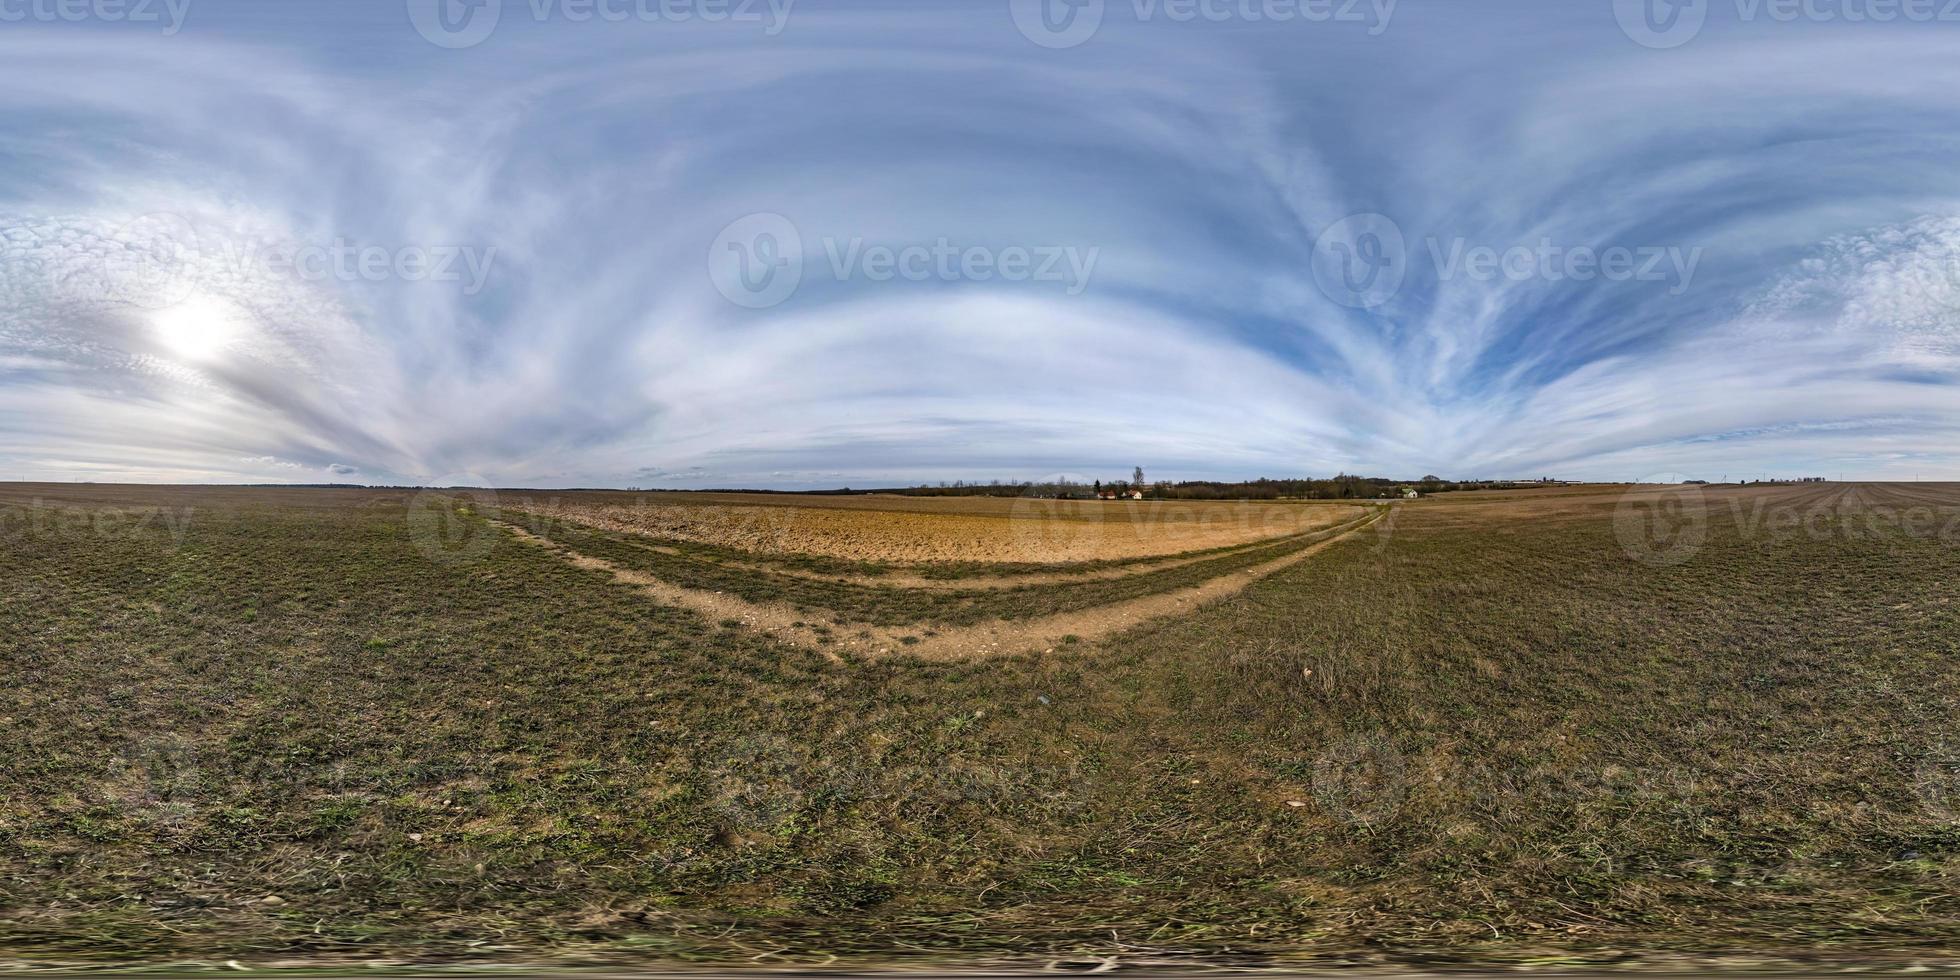 fullständig sömlös sfärisk hdri panorama 360 graders vinkelvy på bland fält på vårdagen med fantastiska moln i ekvirektangulär projektion, redo för vr ar virtual reality-innehåll foto